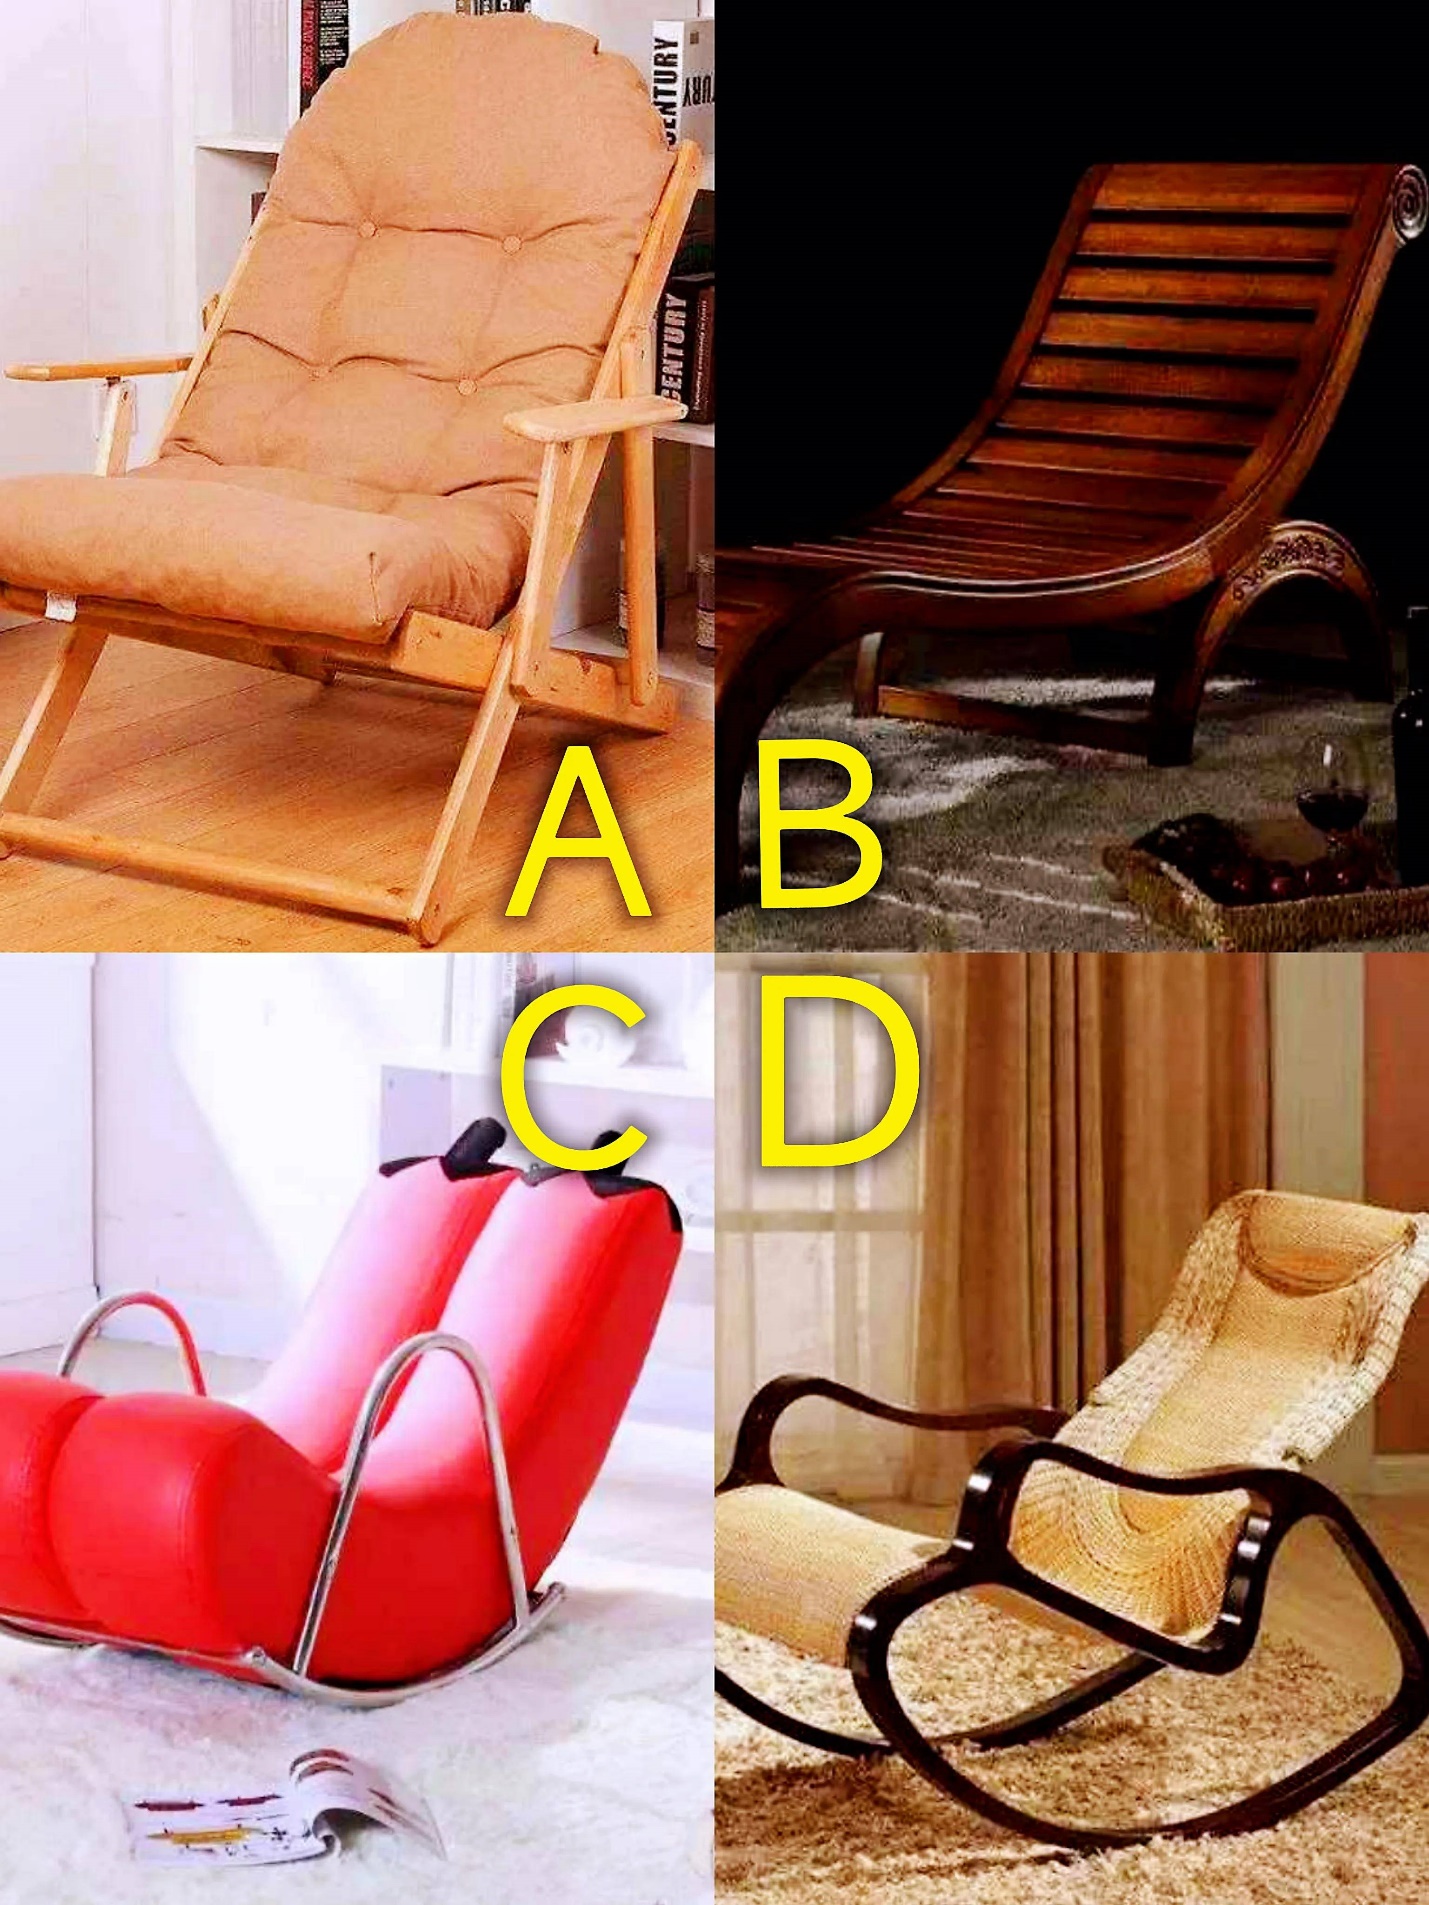 Trắc nghiệm tâm lý: Trong 4 chiếc ghế lười, chiếc ghế nào thoải mái nhất? - 1